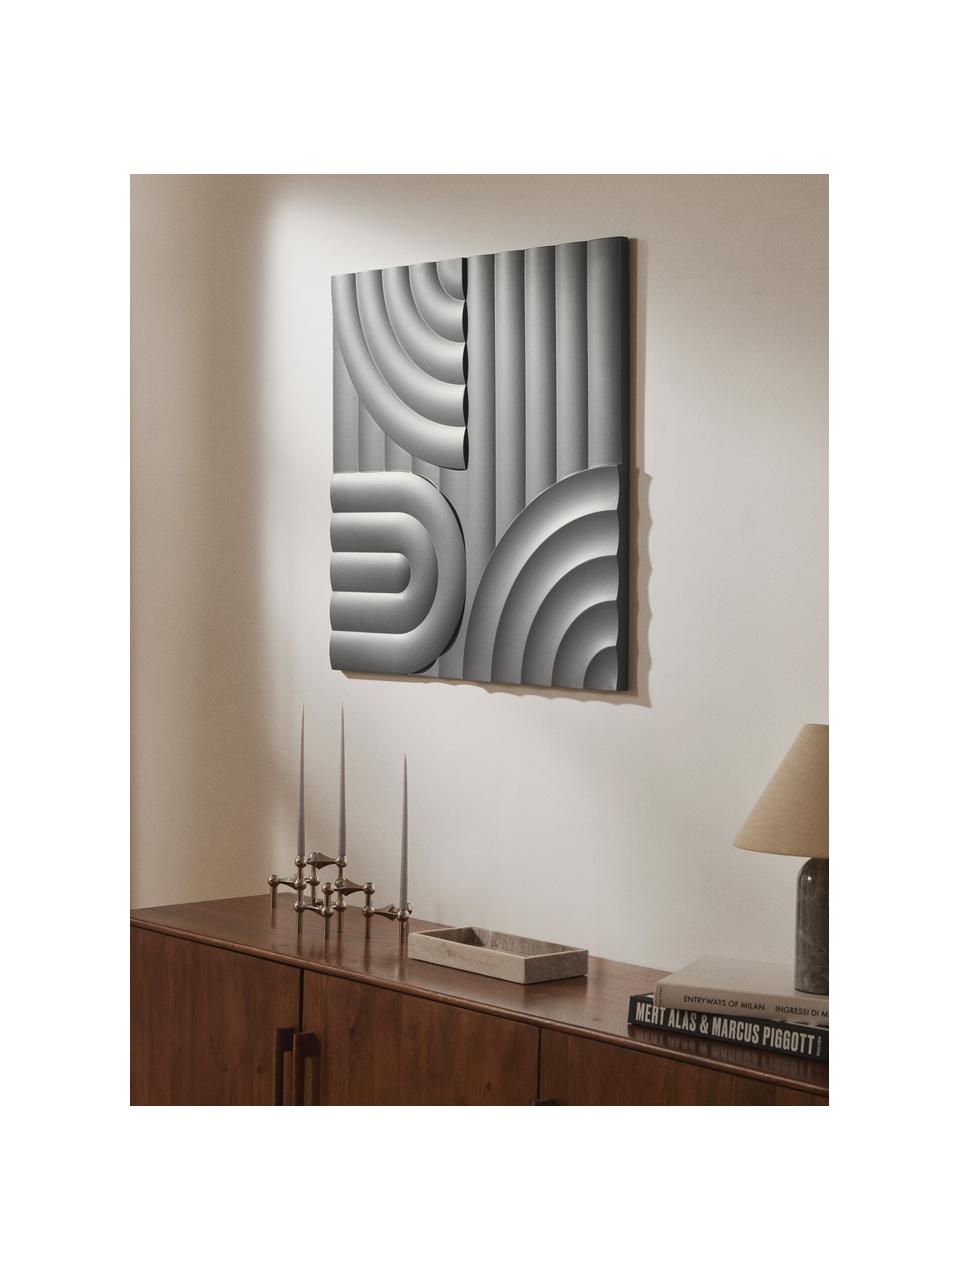 Nástěnná dekorace Massimo, Dřevovláknitá deska střední hustoty (MDF), Tmavě šedá, Š 80 cm, V 80 cm